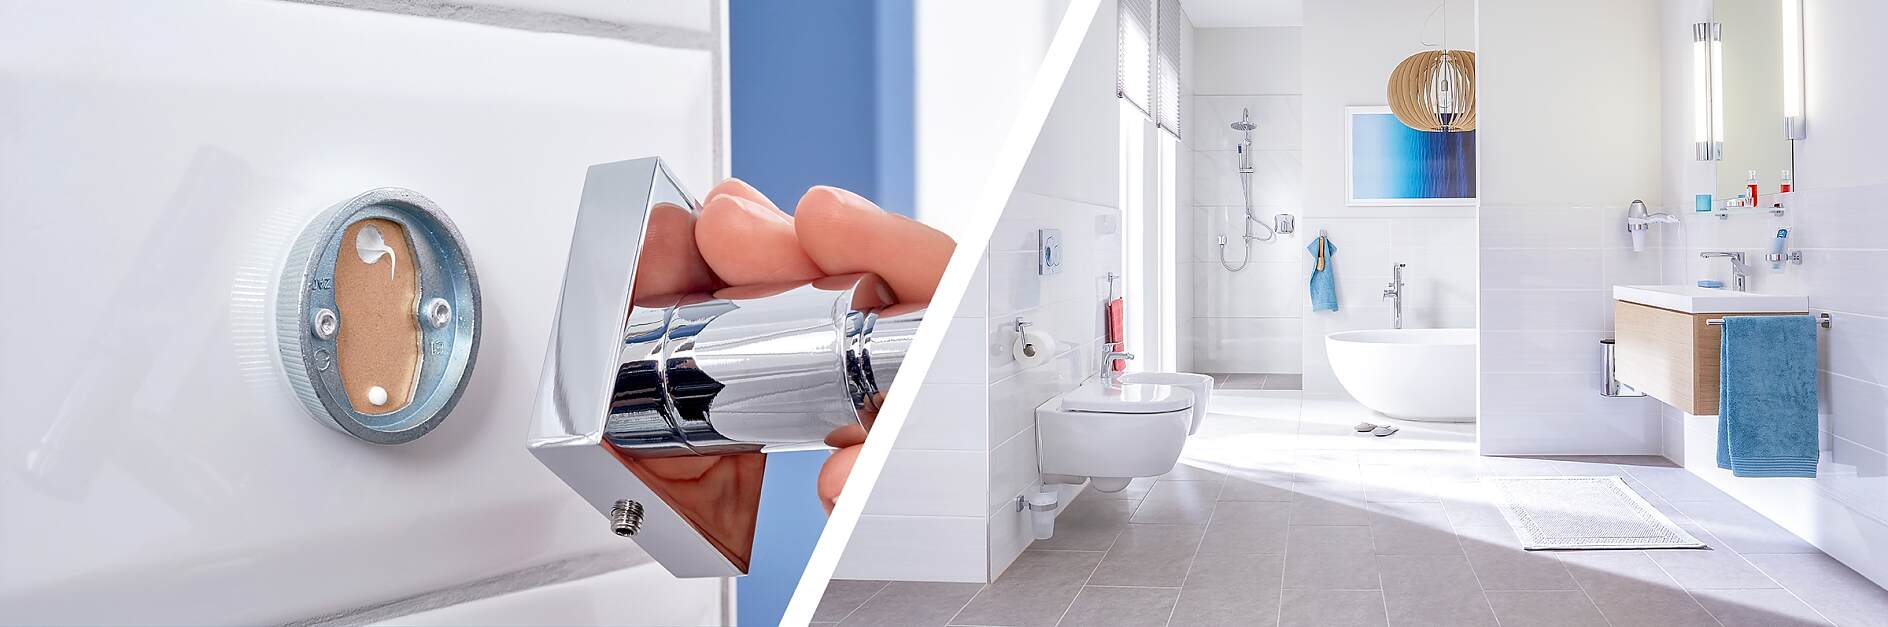 Solutions adhésives pour accessoires de salle de bain - tesa